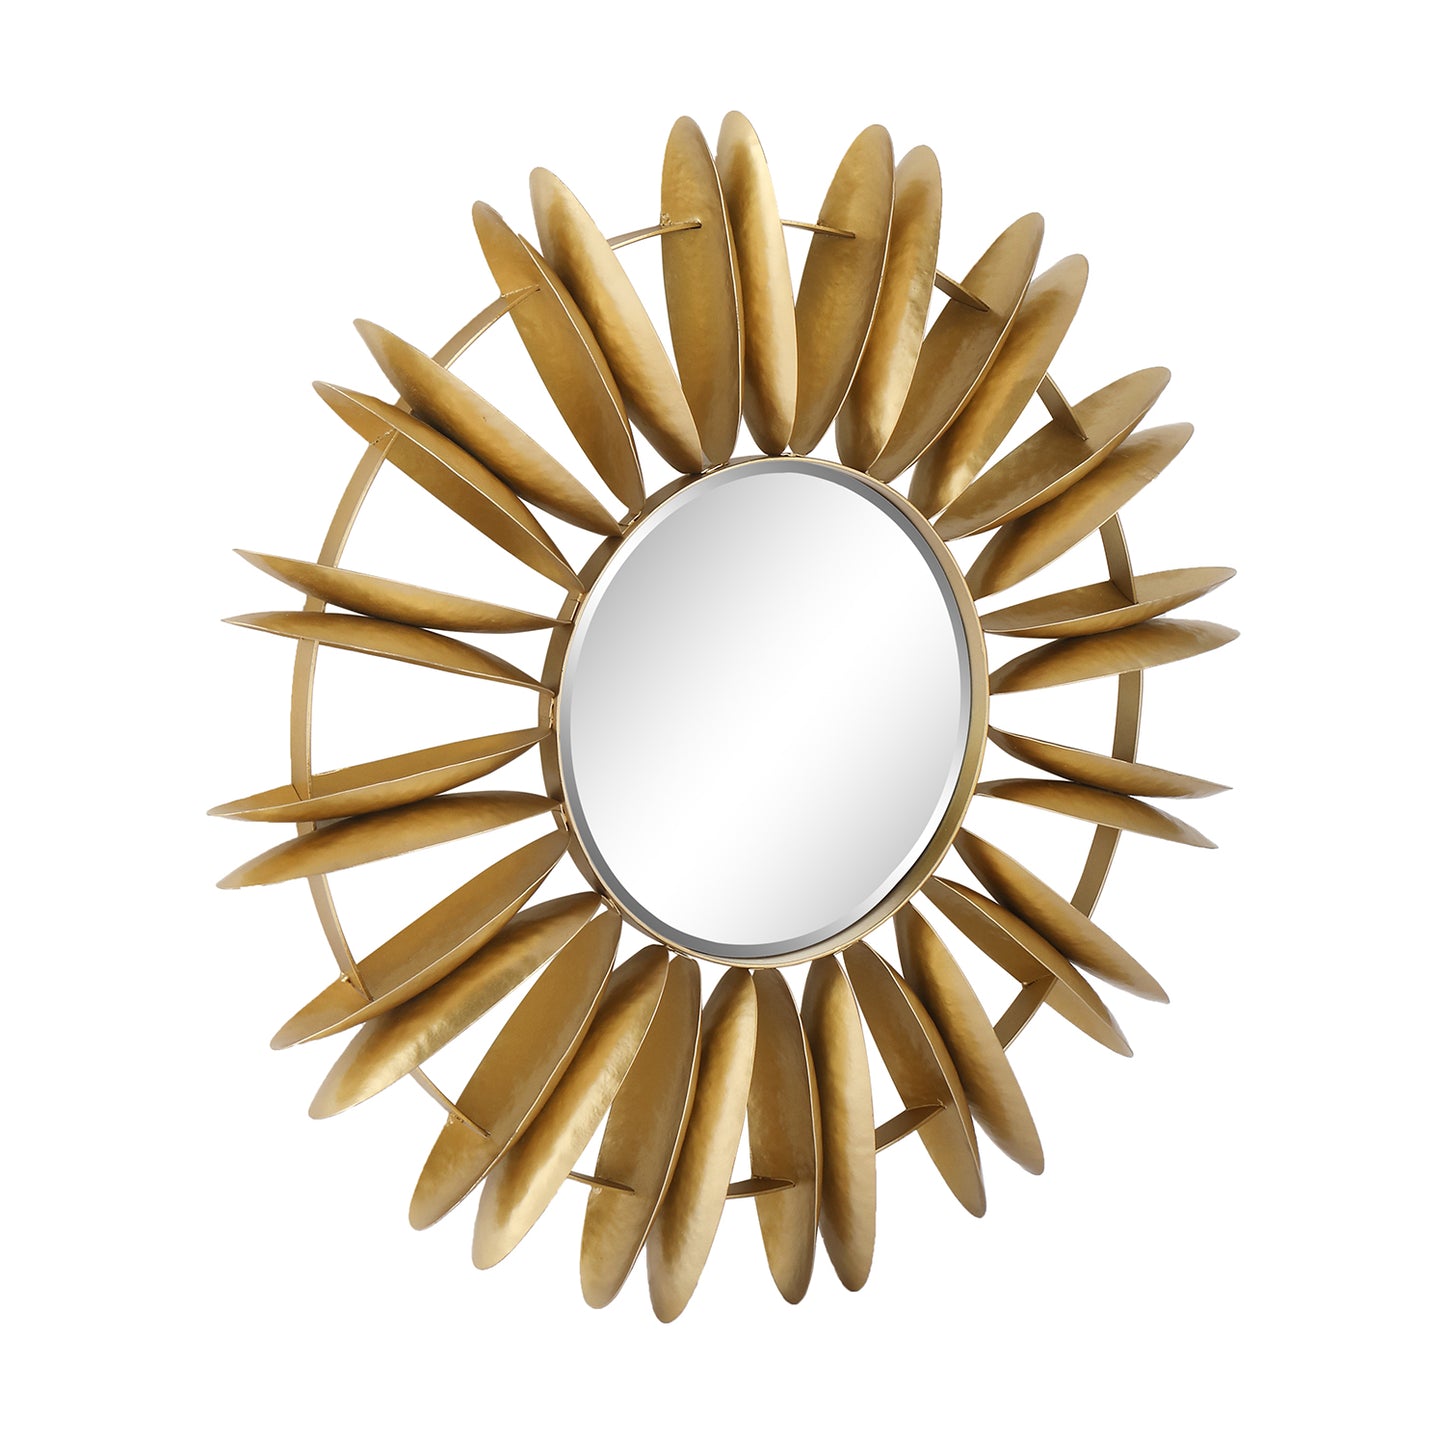 MacLuu Sunburst Aesthetic Sunflower Metal Wall Mirror